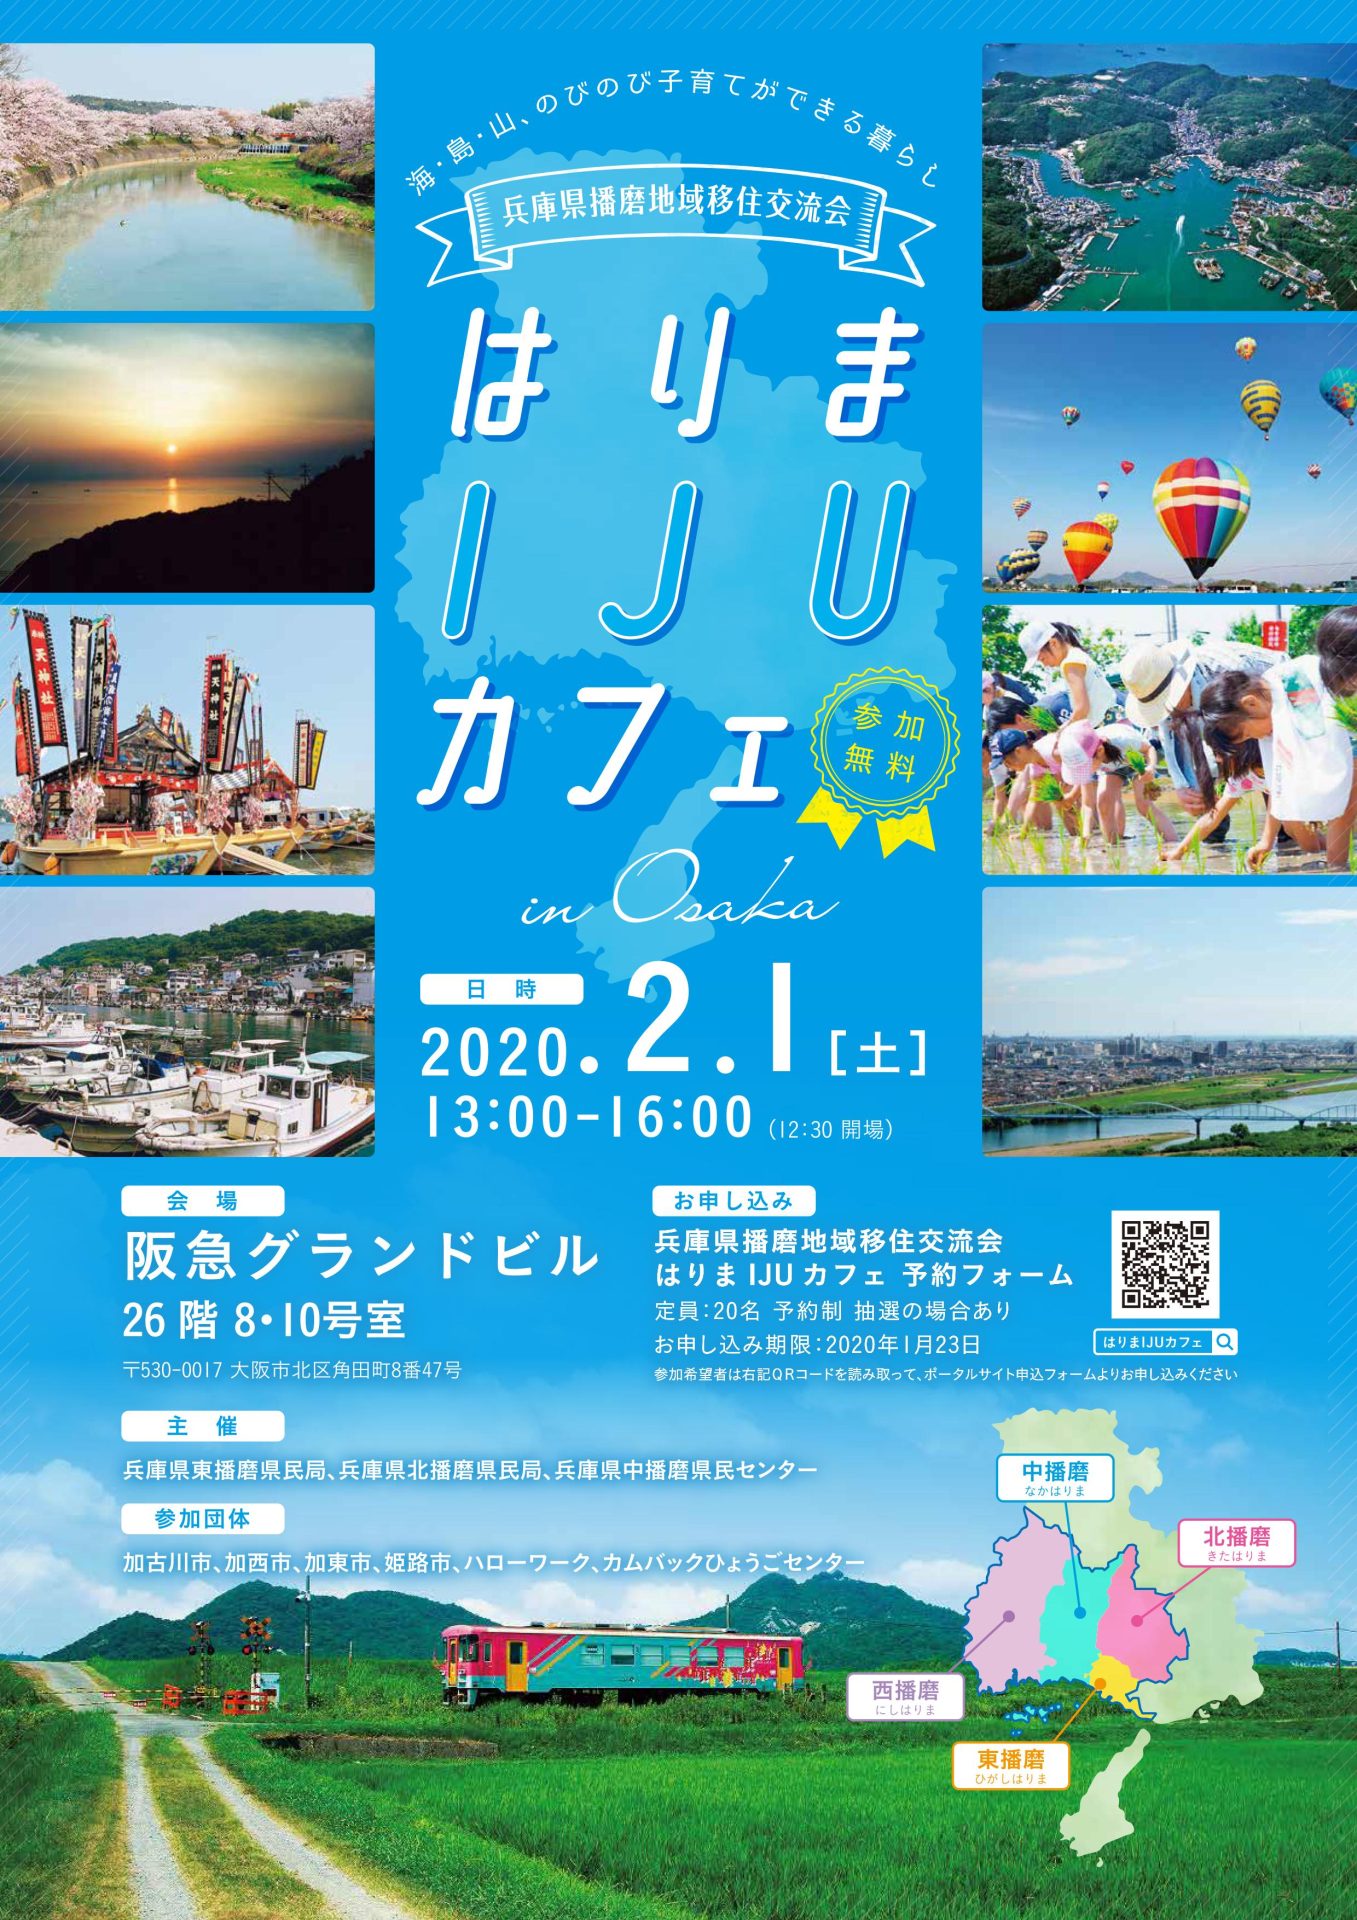 兵庫県播磨地域移住交流会 -はりまIJUカフェ- | 移住関連イベント情報